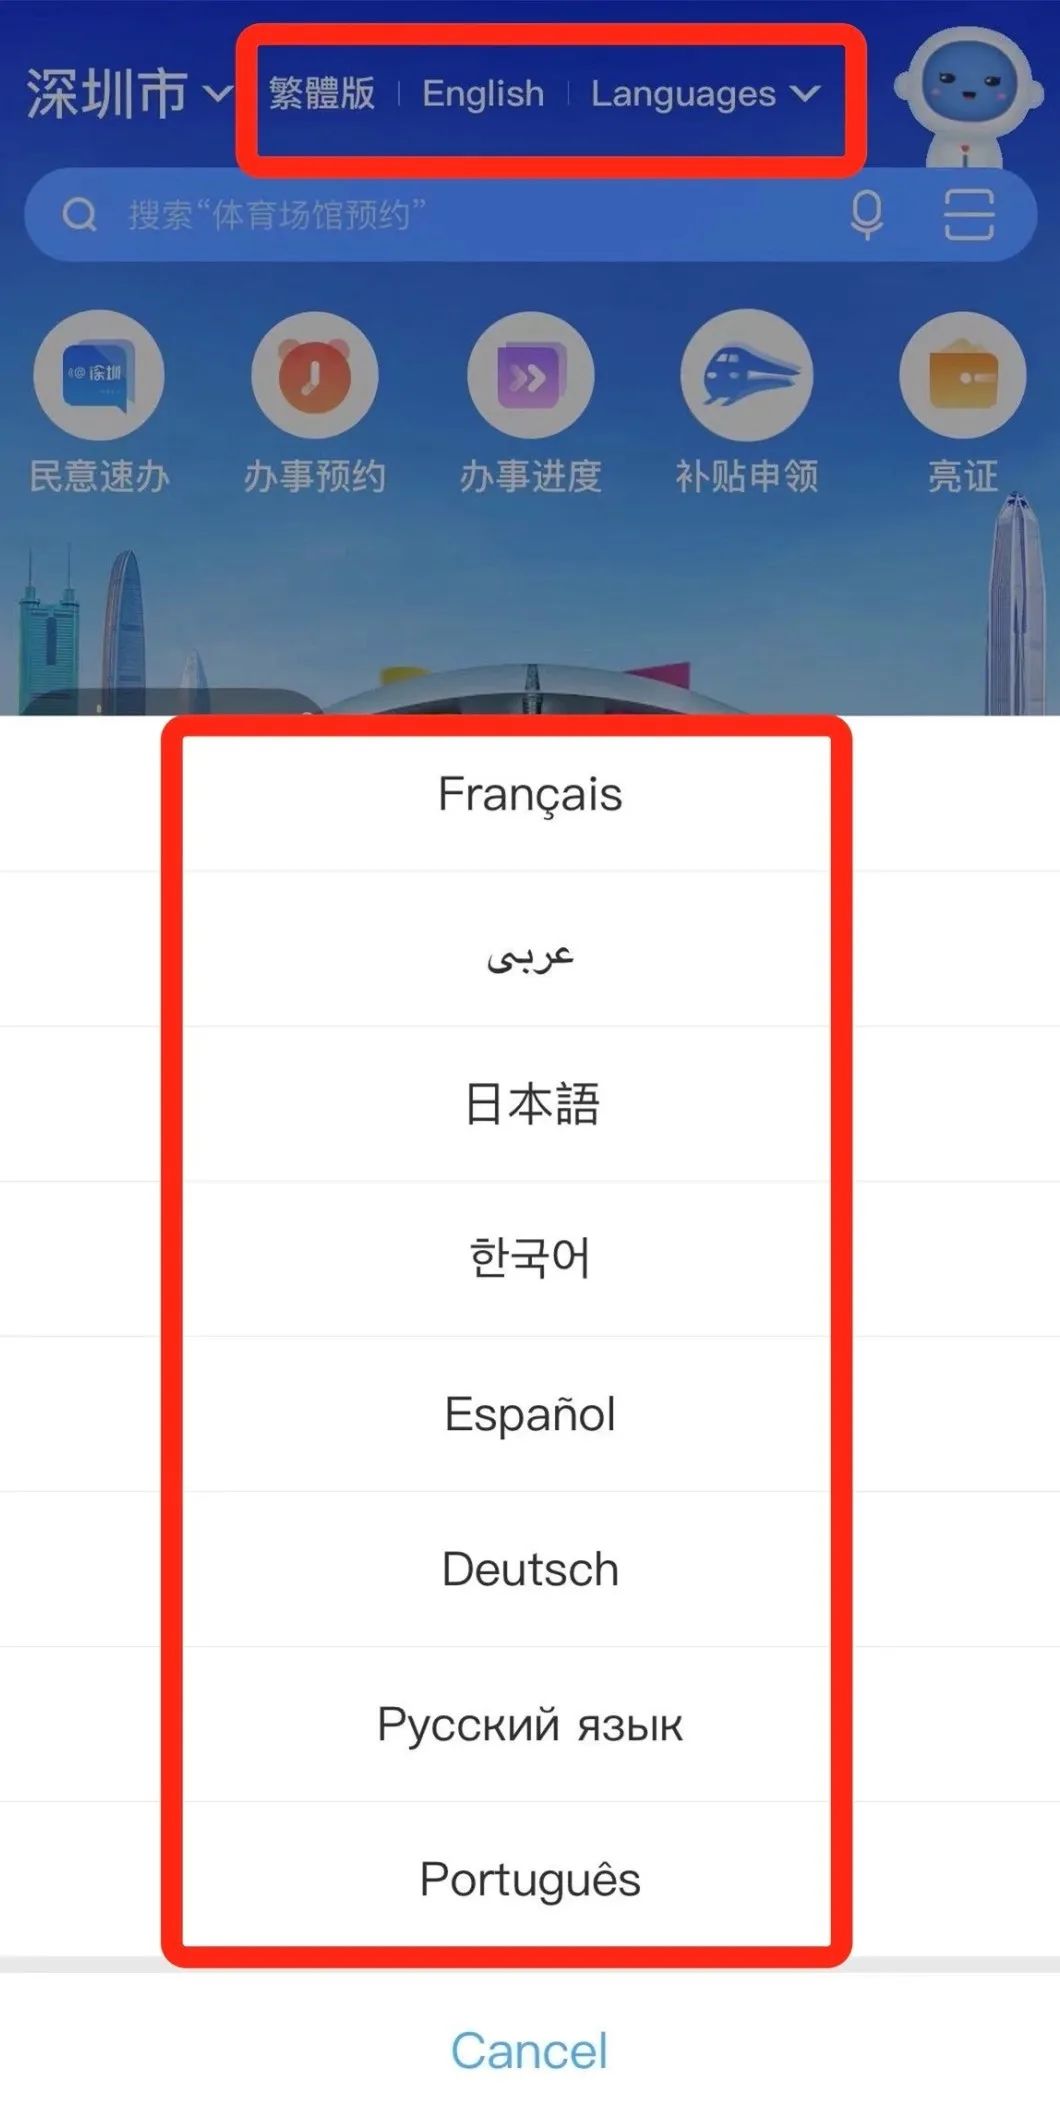 深圳线上服务平台多语种服务扩容国际化营商环境再升级！(图8)